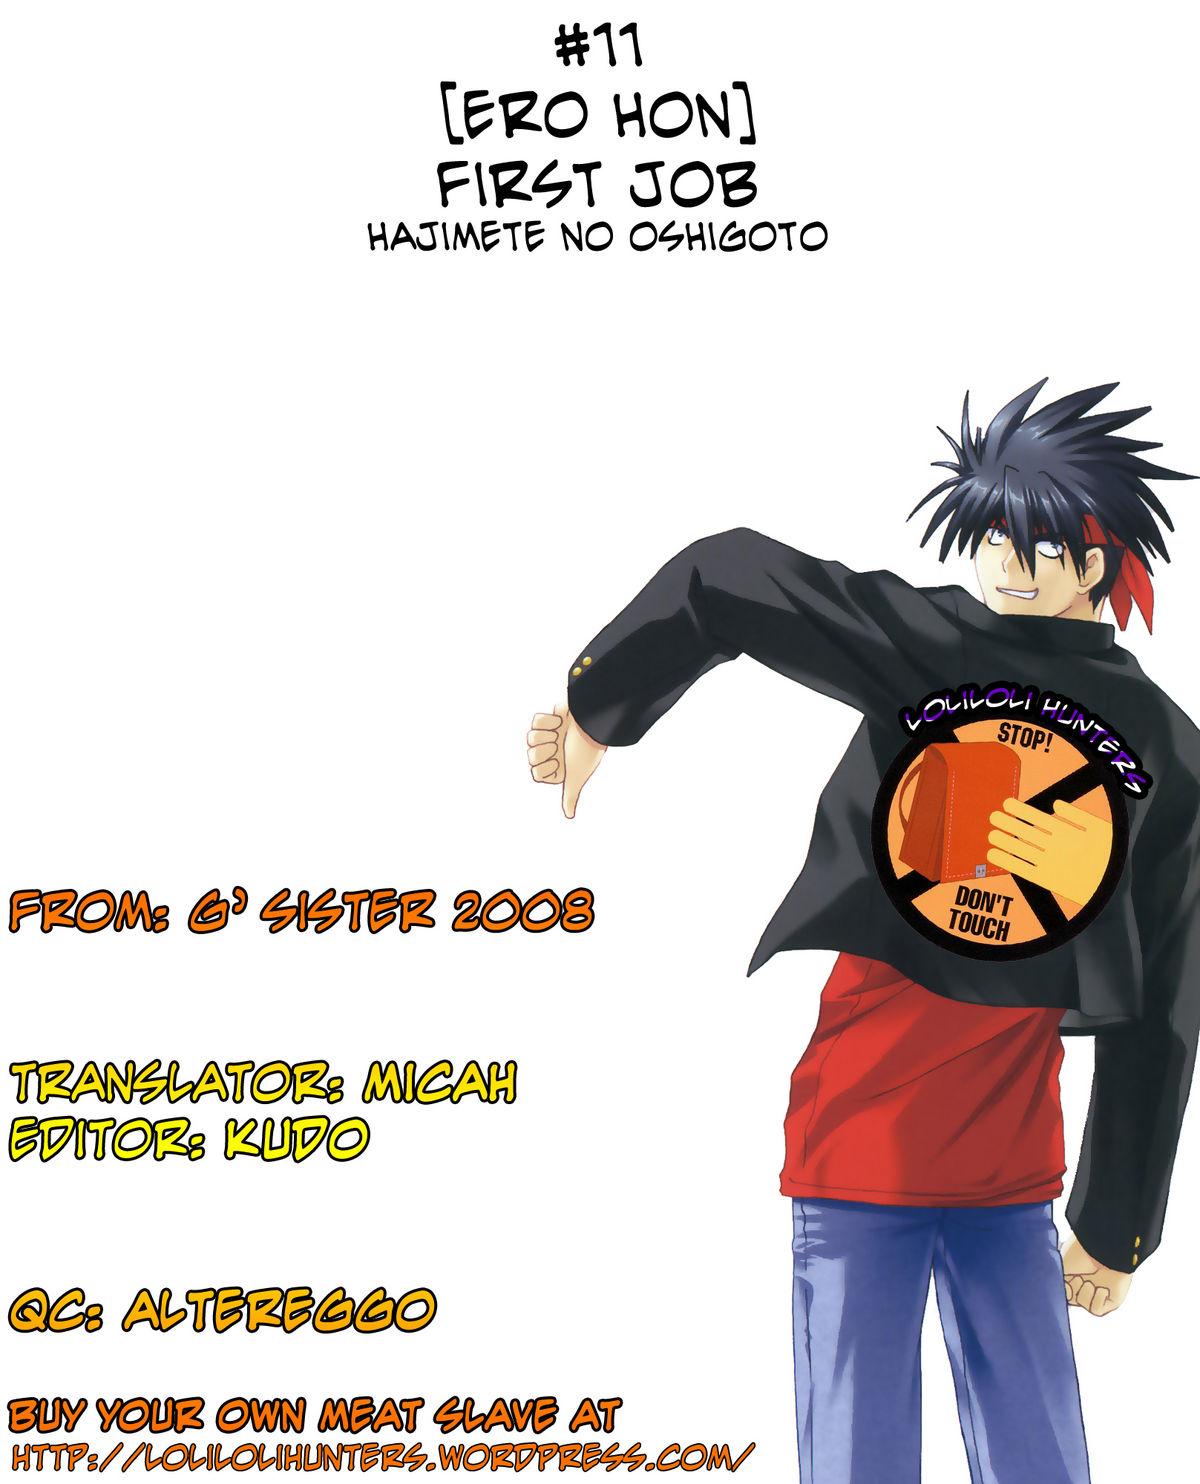 First Job 5